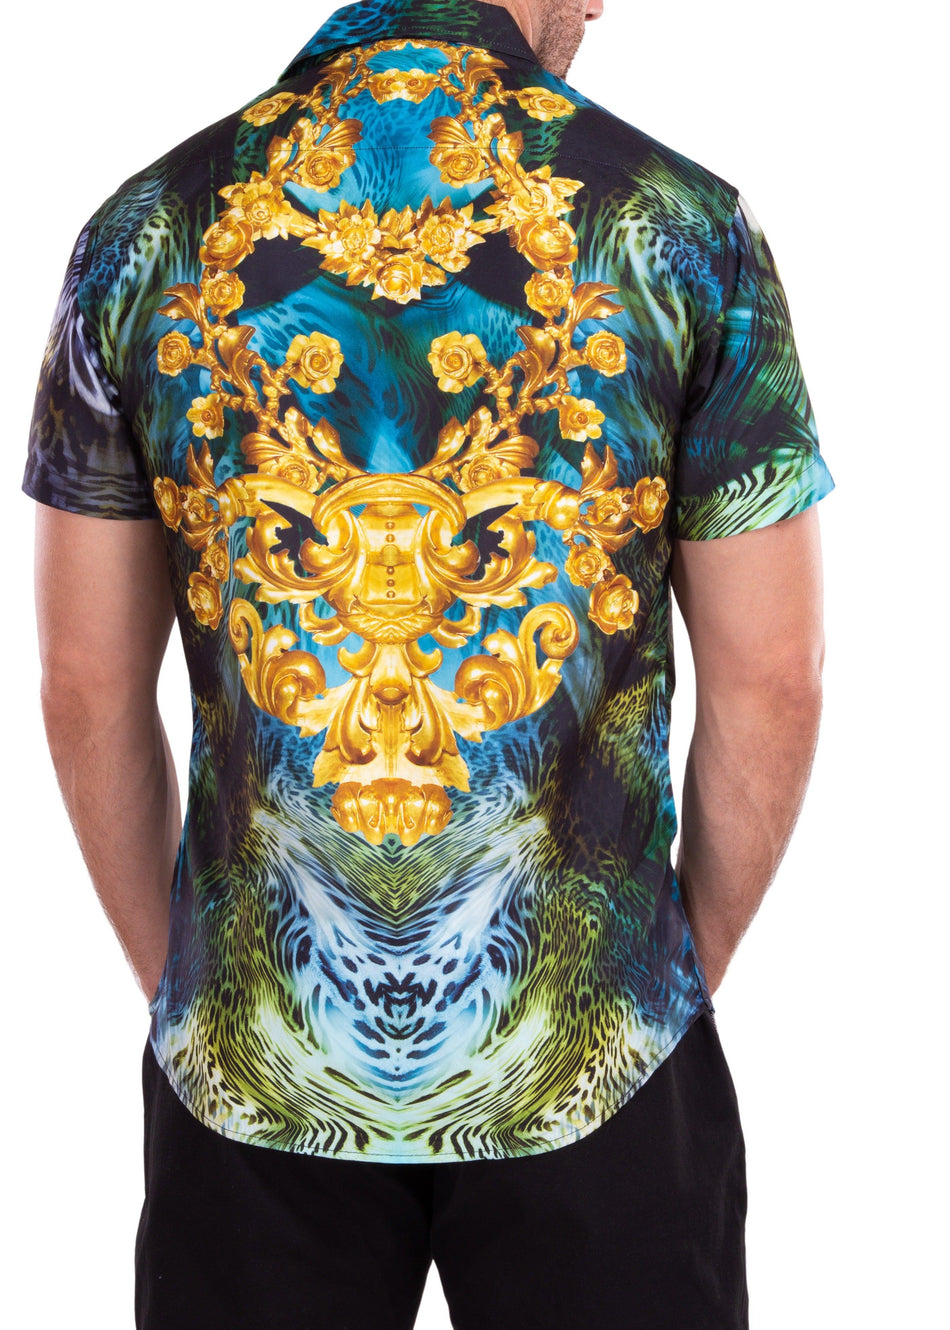 Gold Flourish Trippy Leopard Print Short Sleeve Dress Shirt Green